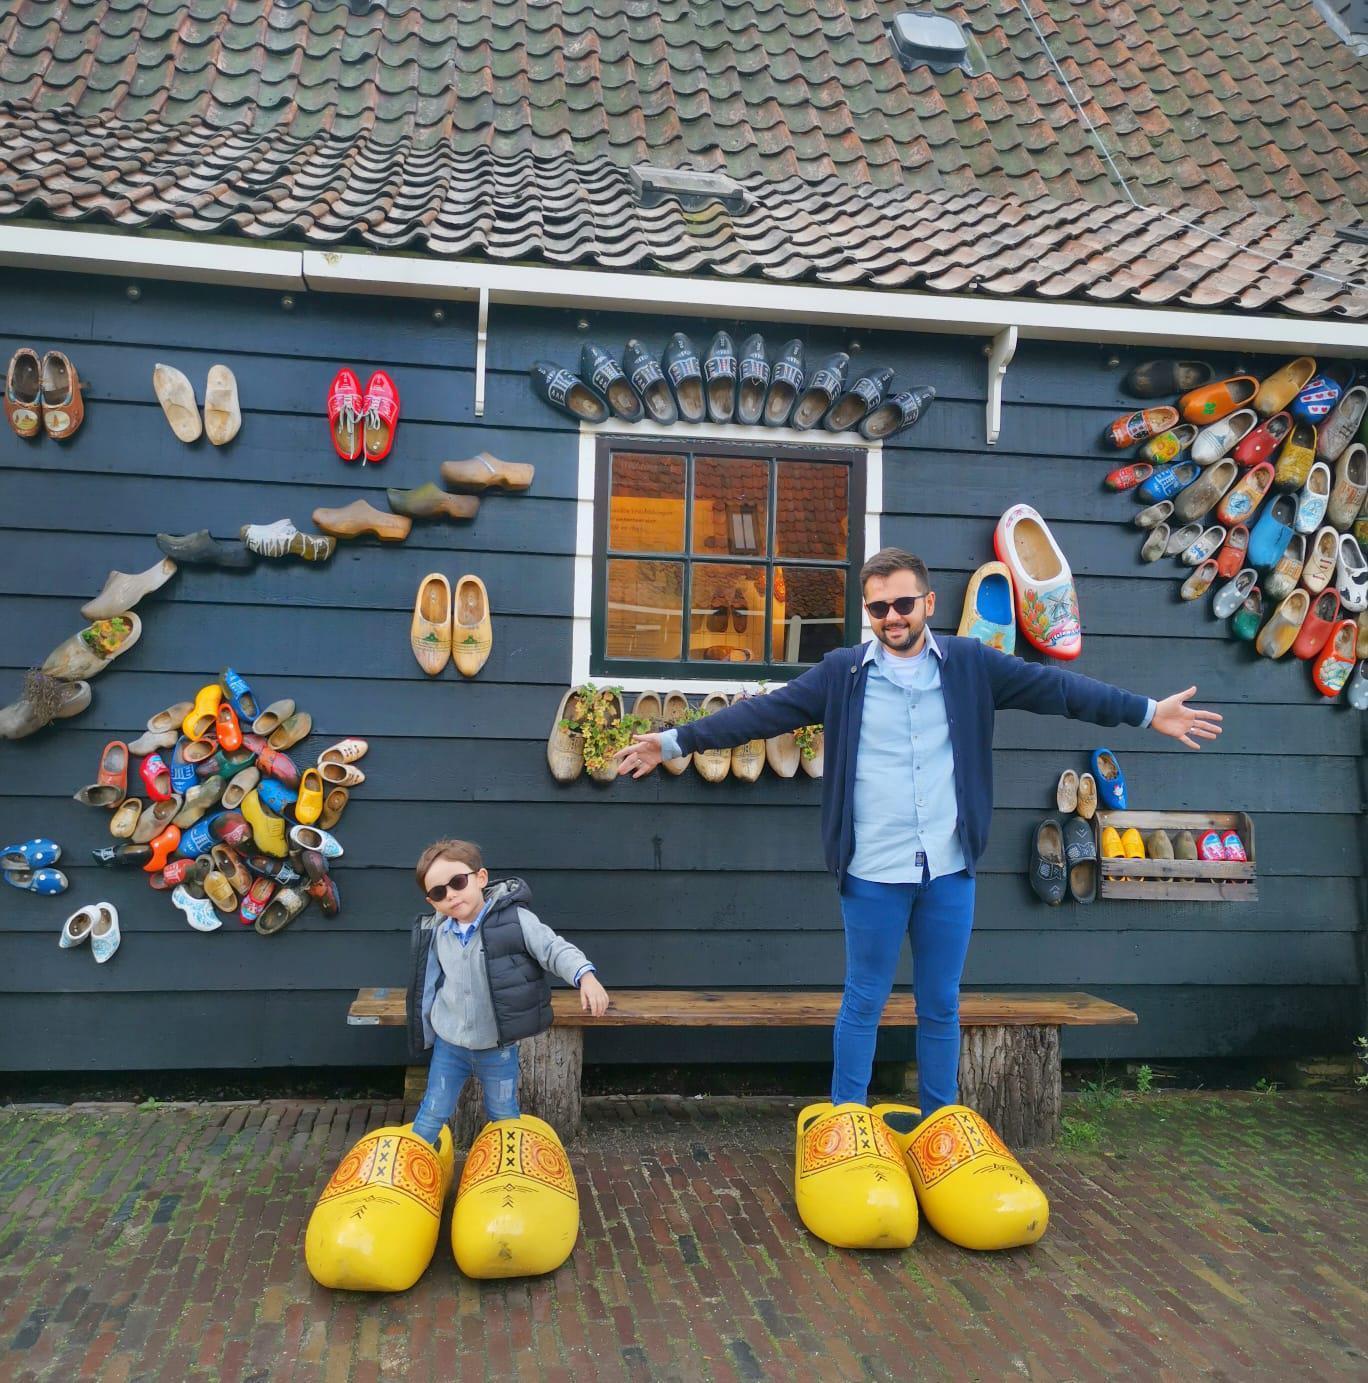 Hollandada sizi 1960lara götüren rüya gibi bir yolculuk: Zaanse Schans